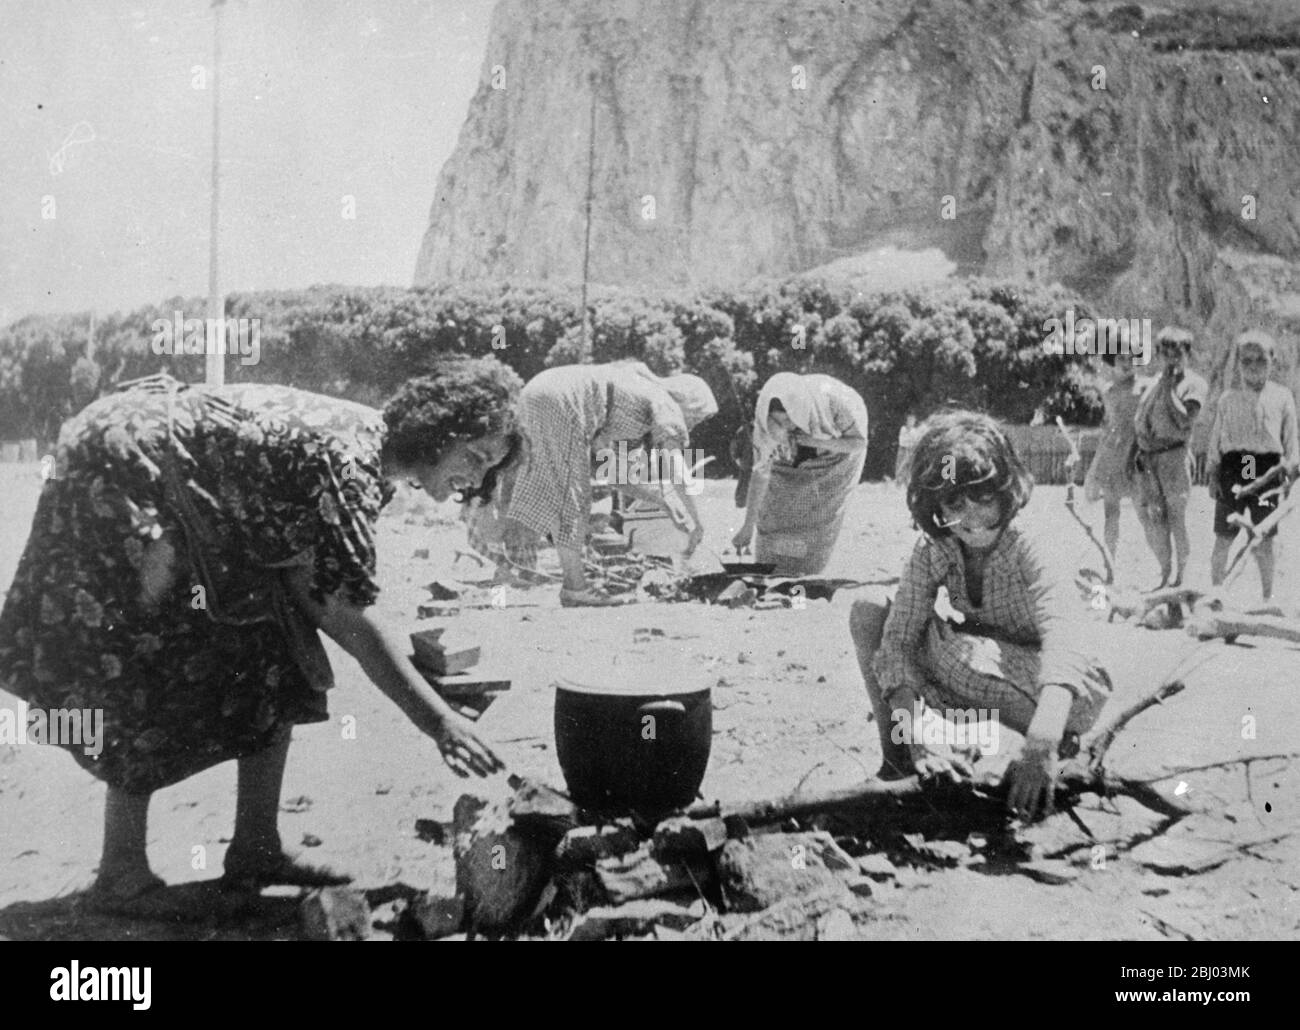 Los refugiados españoles buscan seguridad en Gibraltar . - estas fotos , recién recibidas en Londres , se hicieron en un campamento especial establecido en Gibraltar para los refugiados que buscaron seguridad en la Roca de los terrores de la guerra civil española . - cientos de fugitivos españoles y otros, incluyendo muchas mujeres y niños, huyeron a Gibraltar a través de la frontera. - Fotos: Refugiados españoles preparando comida en el campamento de Gibraltar . - 29 de julio de 1936 Foto de stock